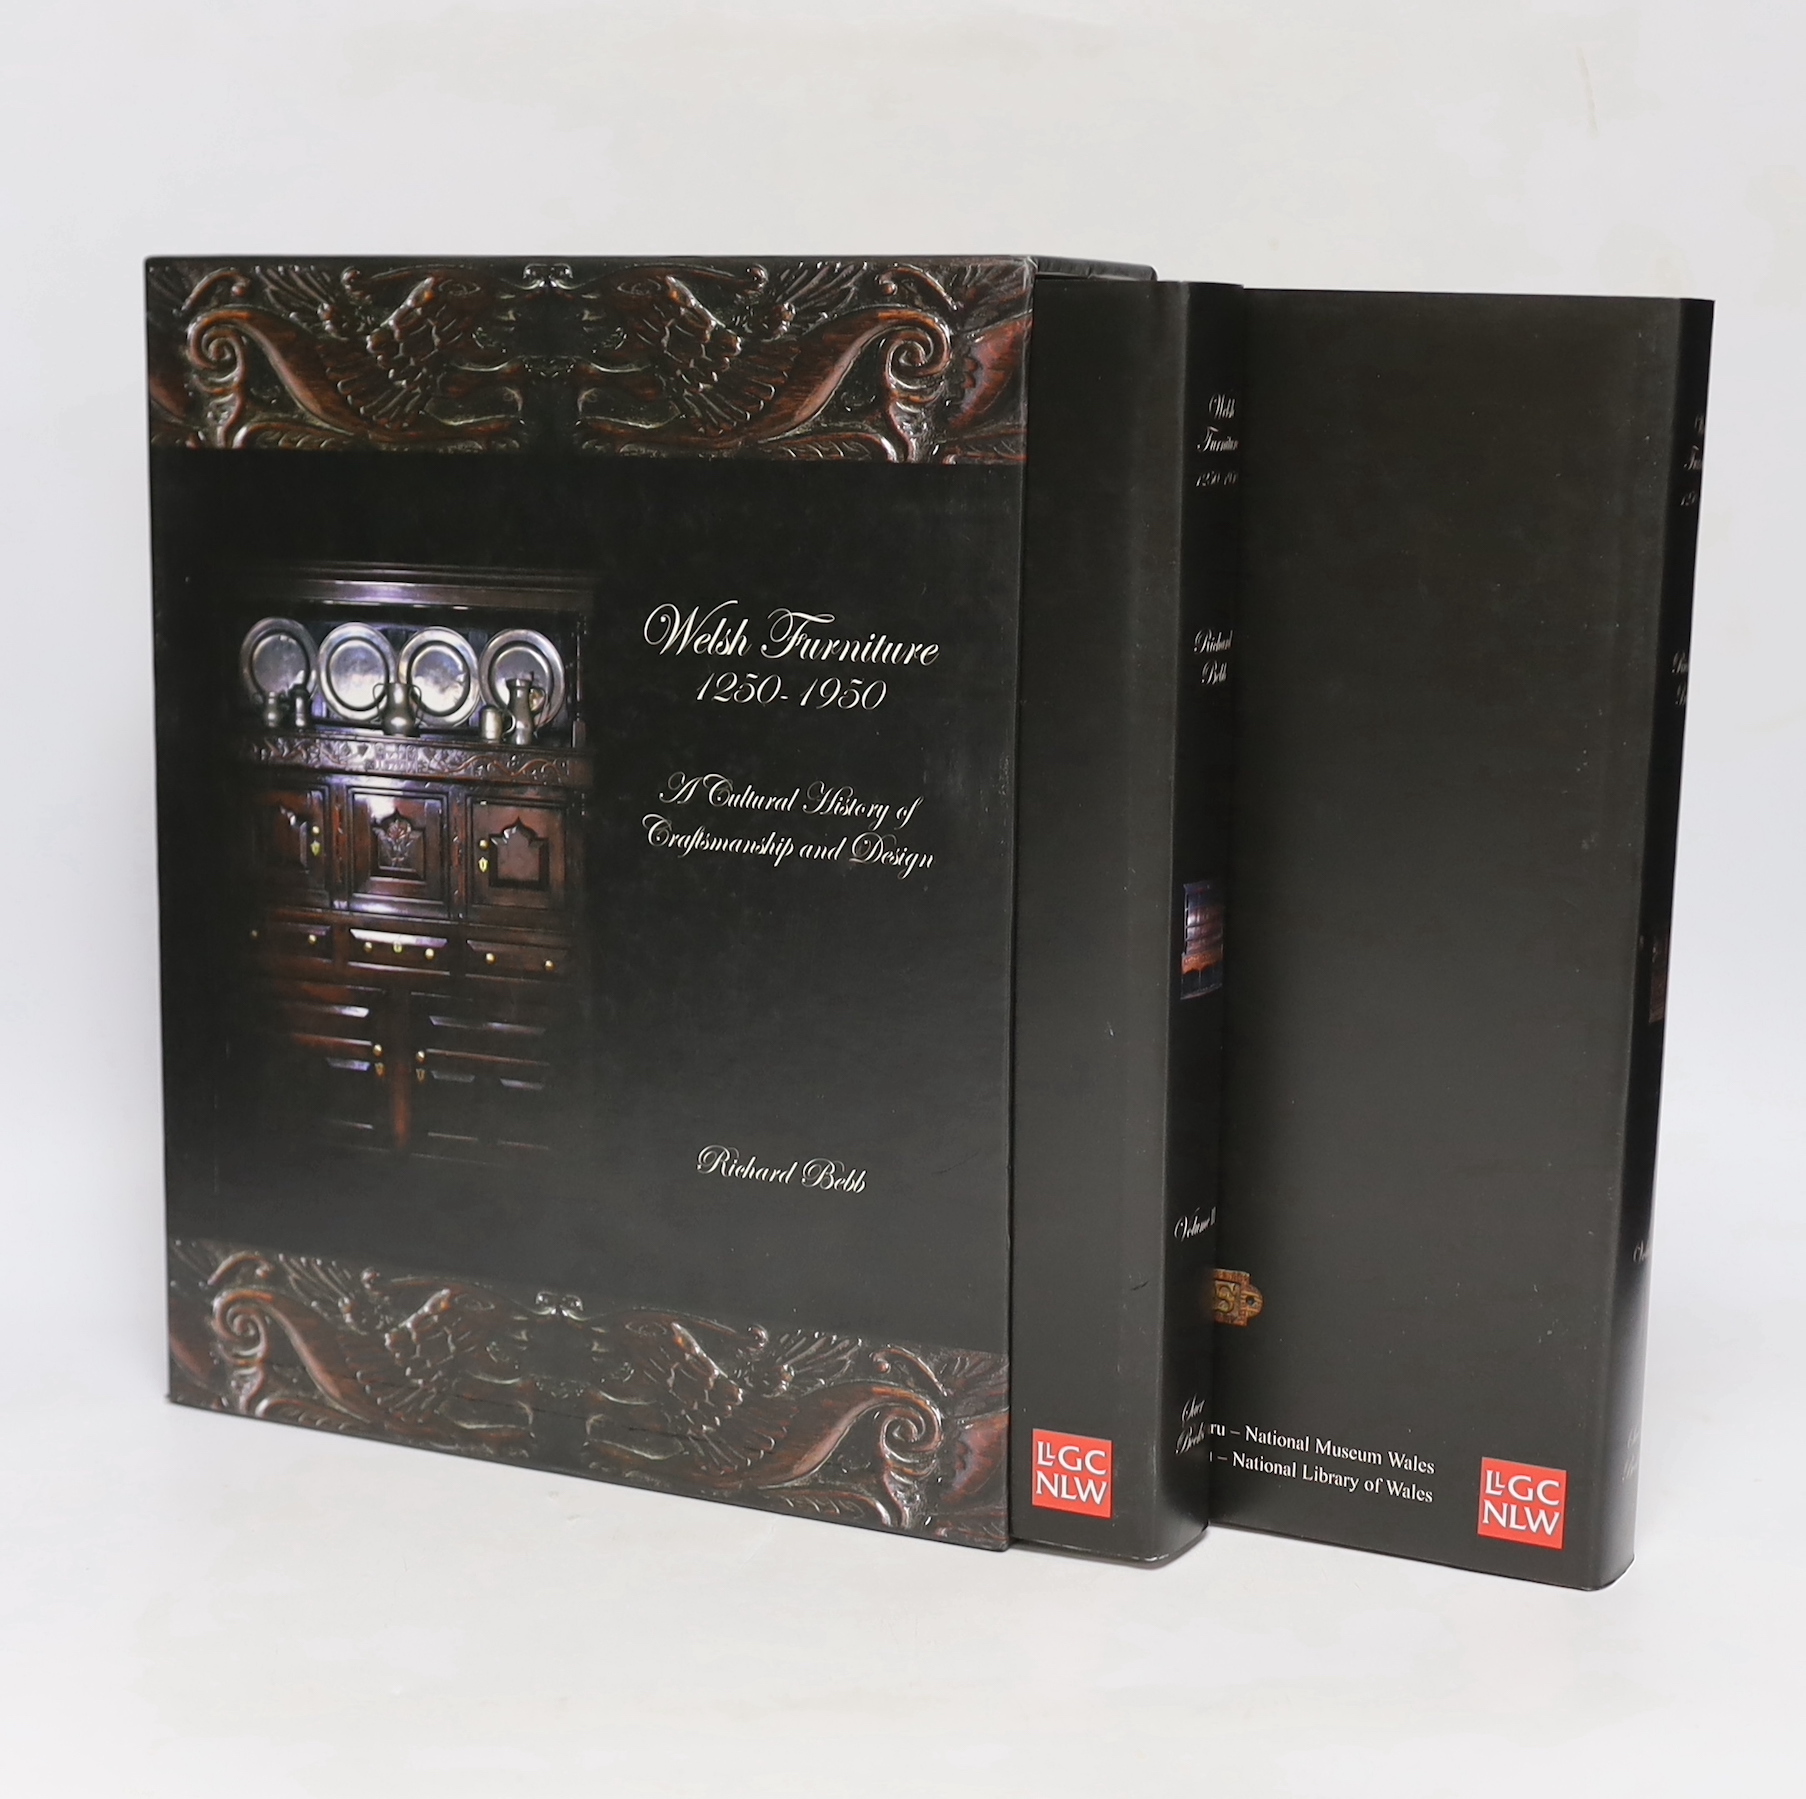 Bebb, Richard - Welsh Furniture 1250-1950: A Cultural History of Craftsmanship and Design, 2 vols, 2007, in slip case